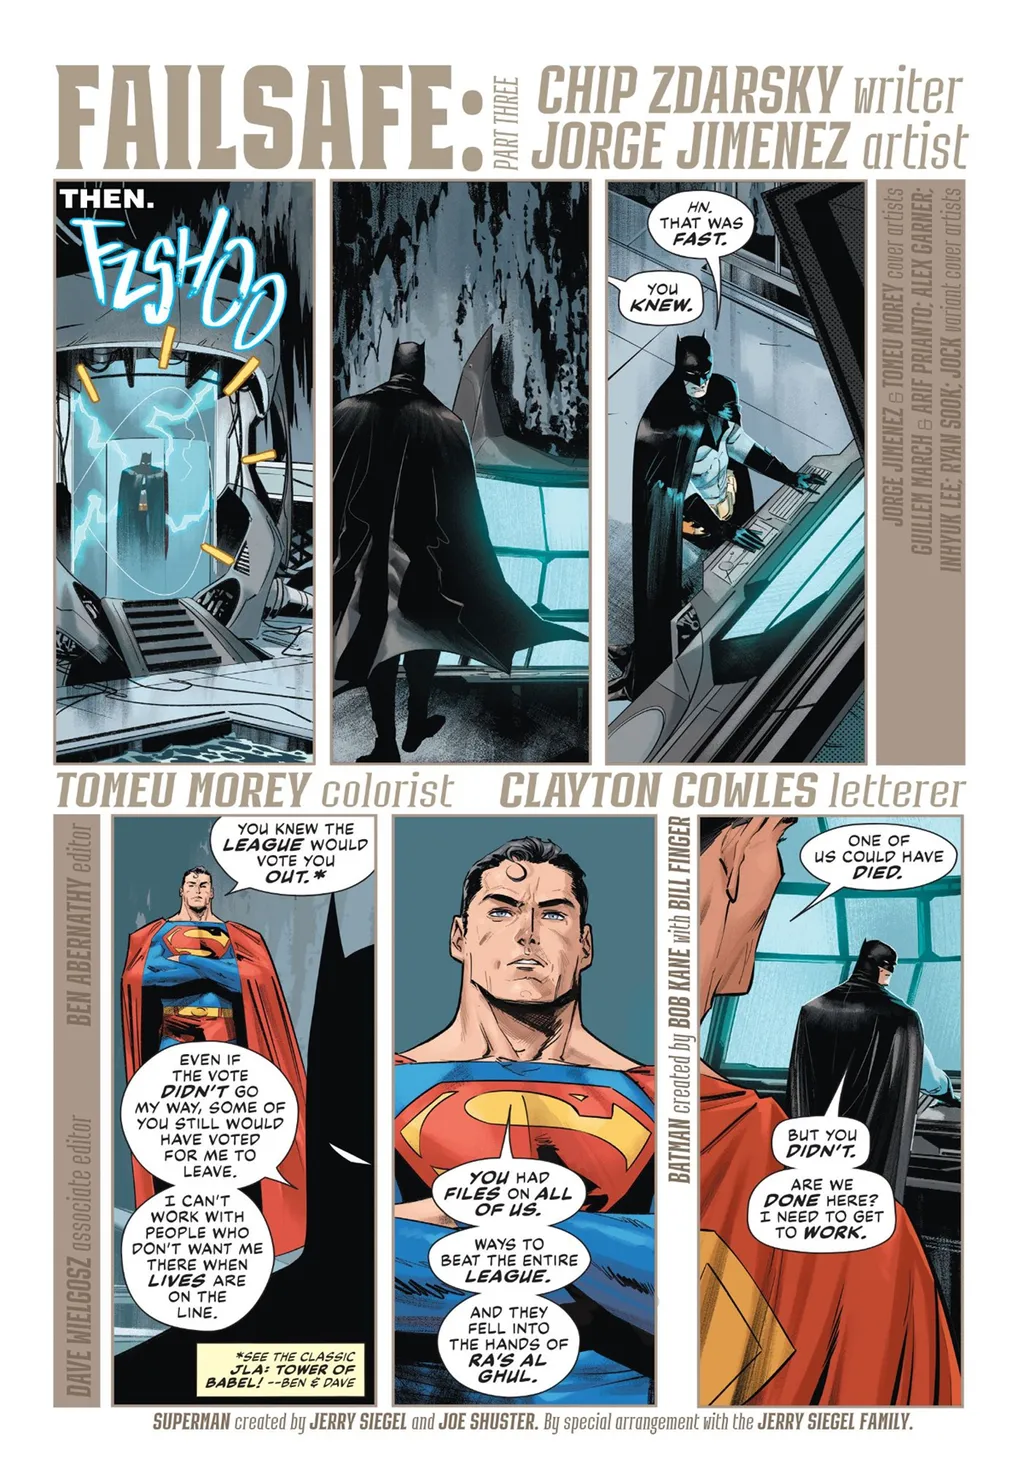 Batman conversa com o Superman sobre seu maior erro com a Liga da Justiça (Imagem: Reprodução/DC Comics)